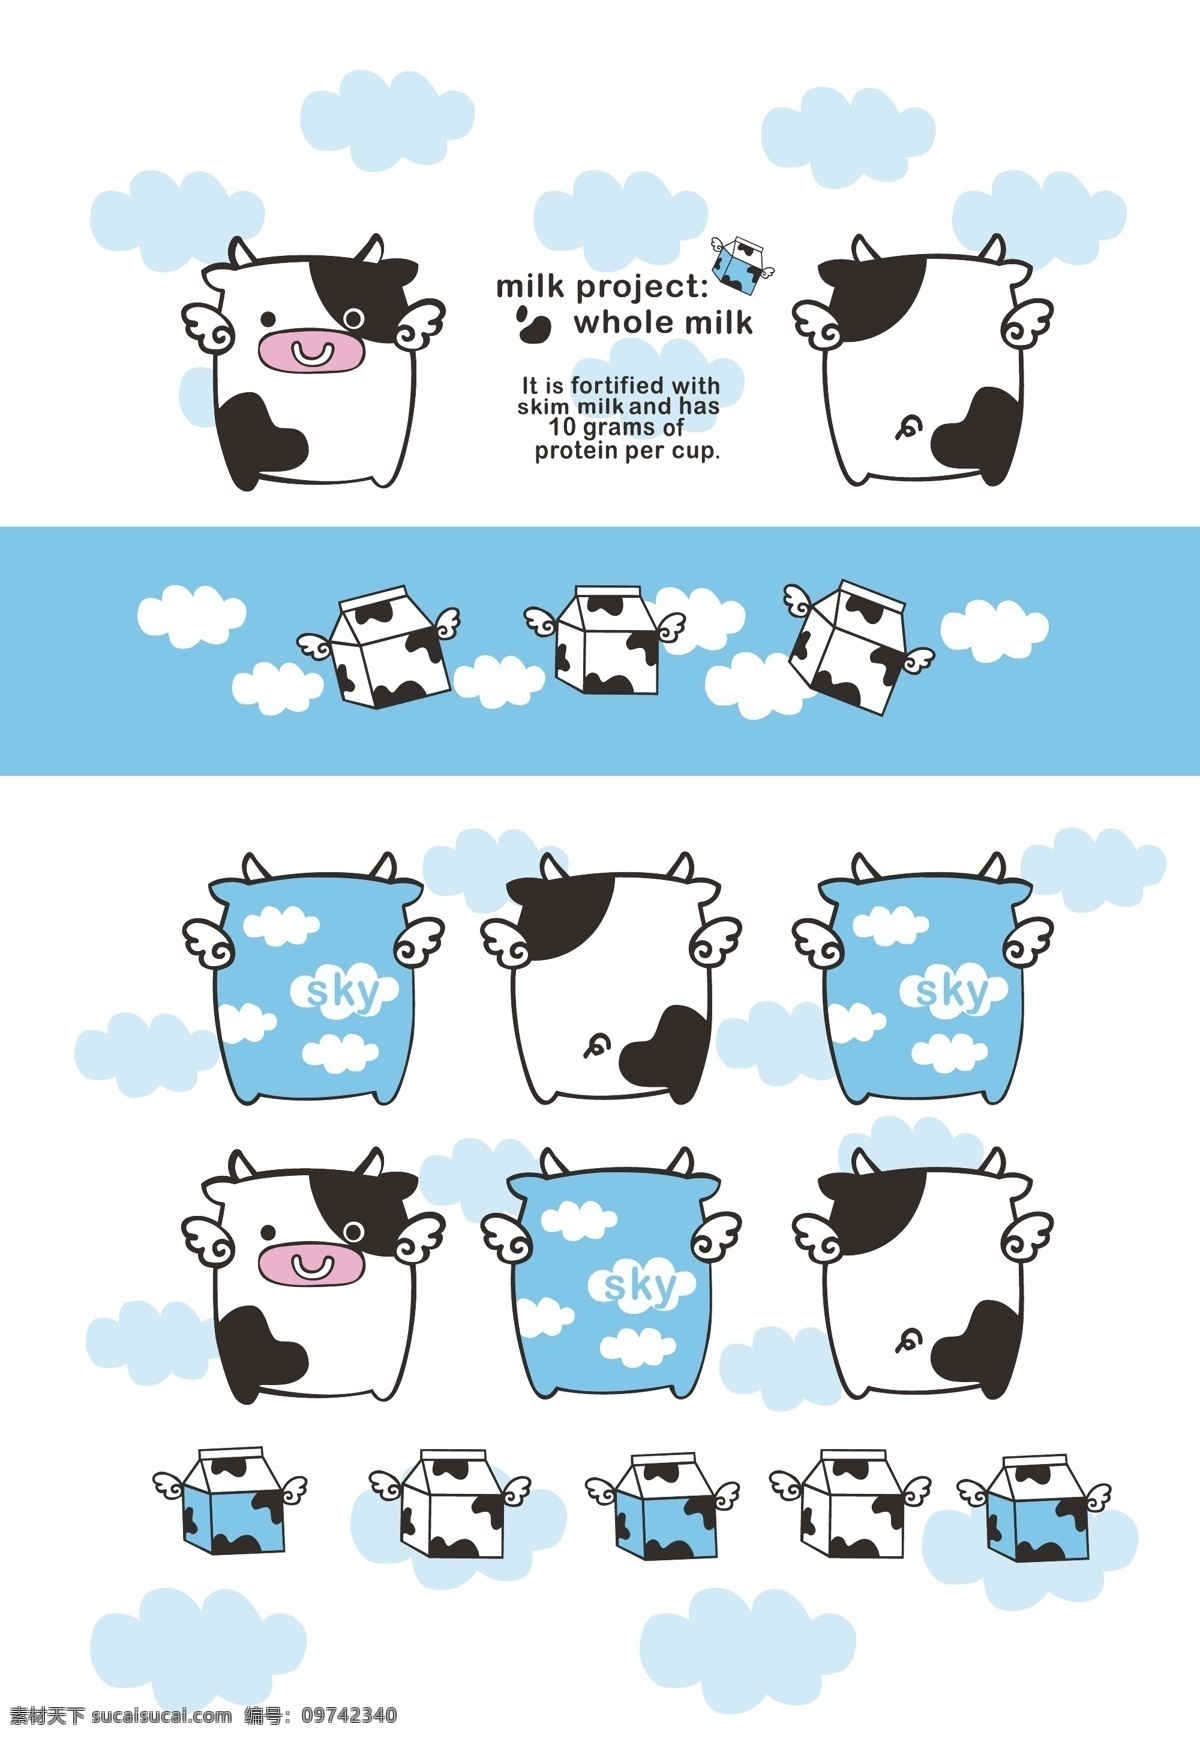 牛奶 奶牛 牛斑 乳牛 鲜奶 鲜牛奶 纯牛奶 小奶牛 牛轧糖 卡通插画 动漫 卡通 儿童 卡通设计 矢量